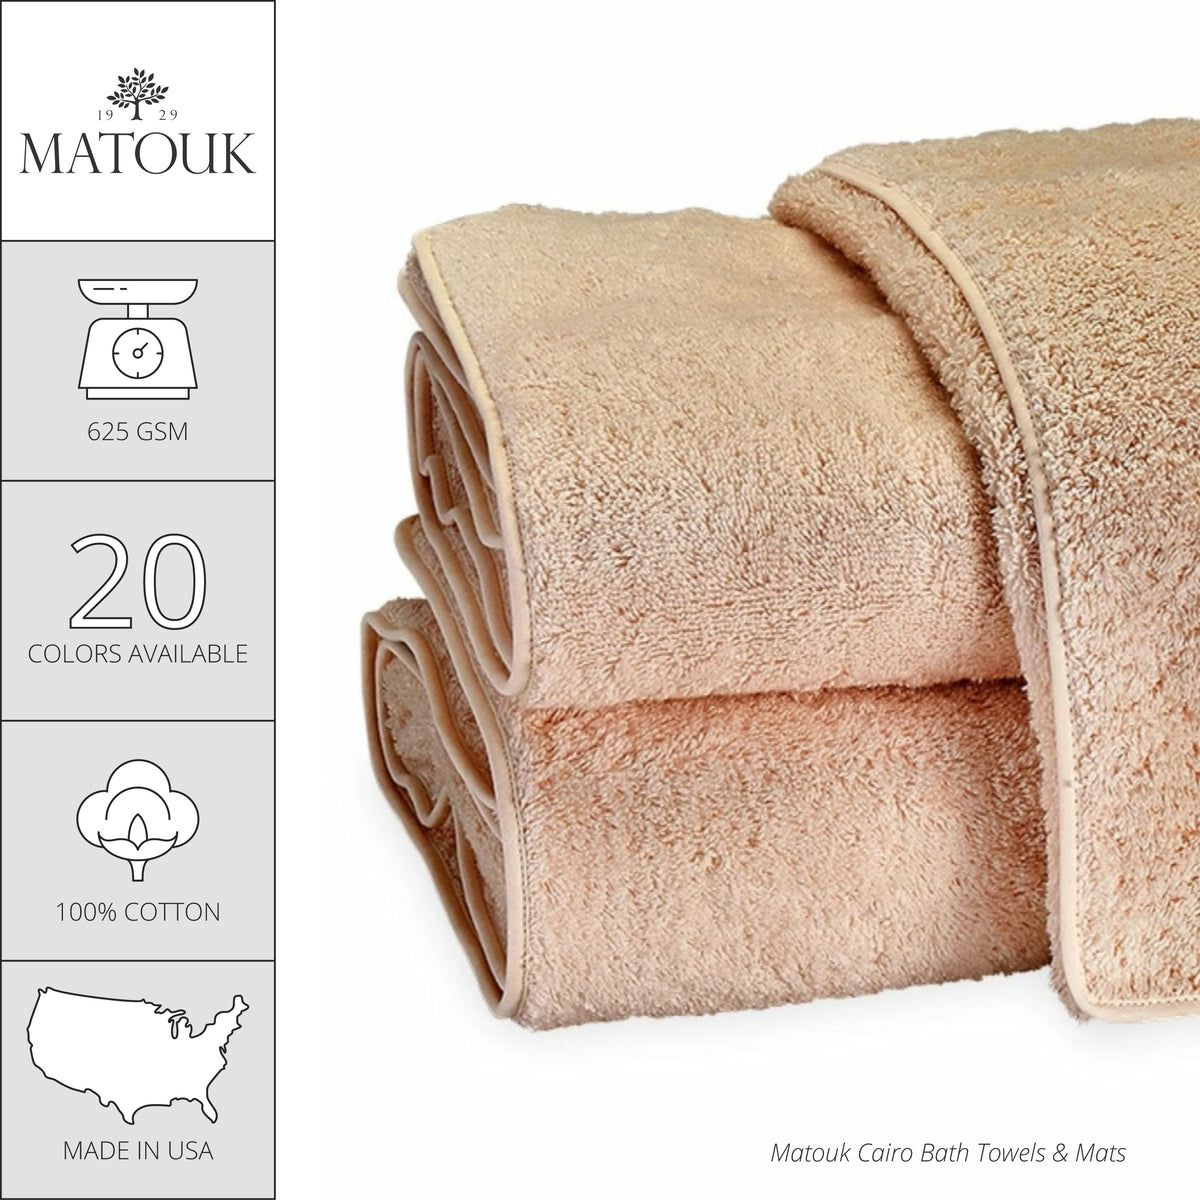 Matouk Cairo Bath Towels and Mats - Sable/Sable